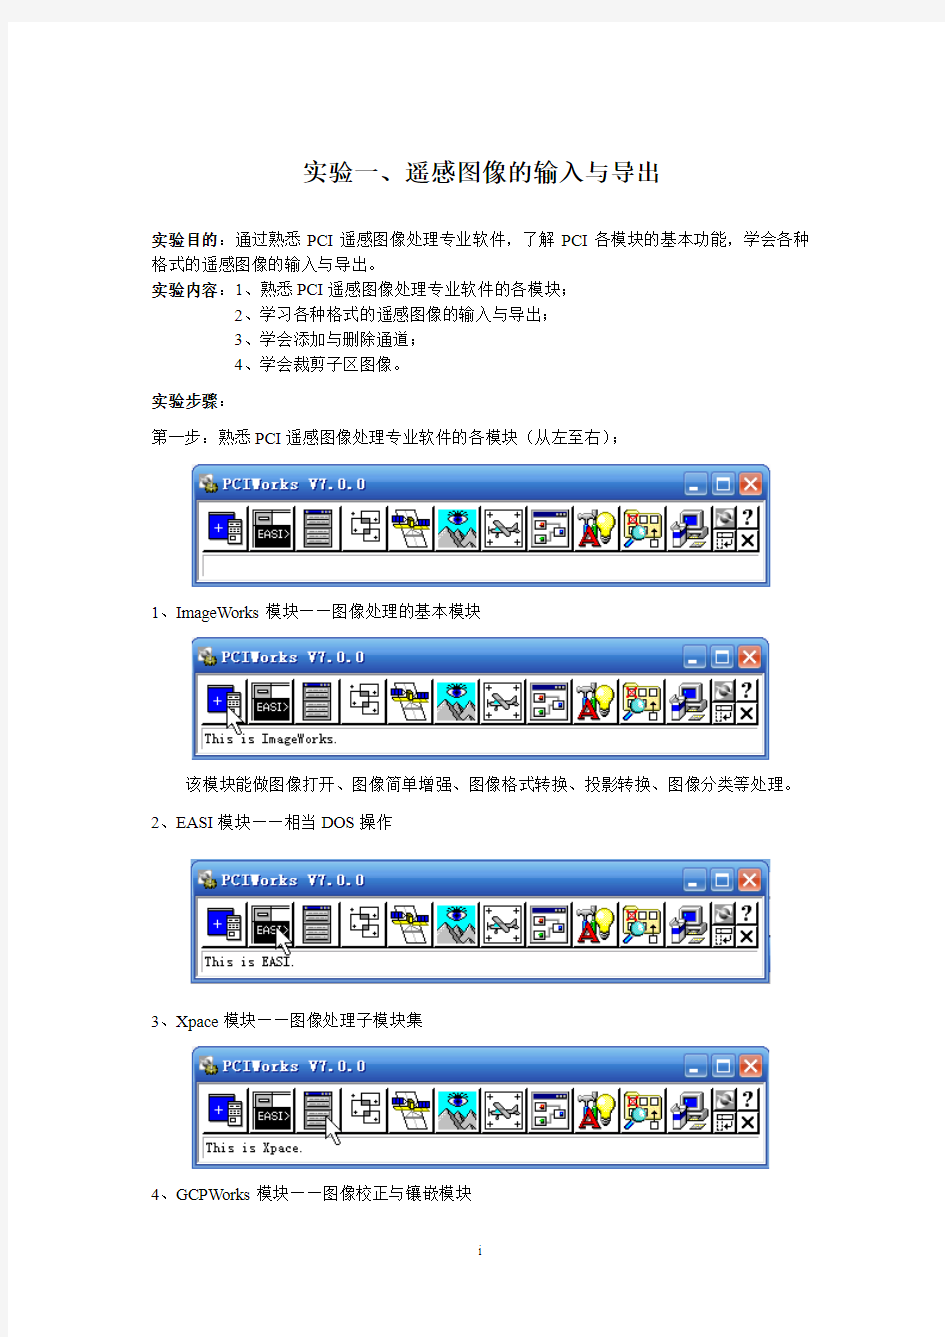 遥感图像处理实验指导书(PCI)1